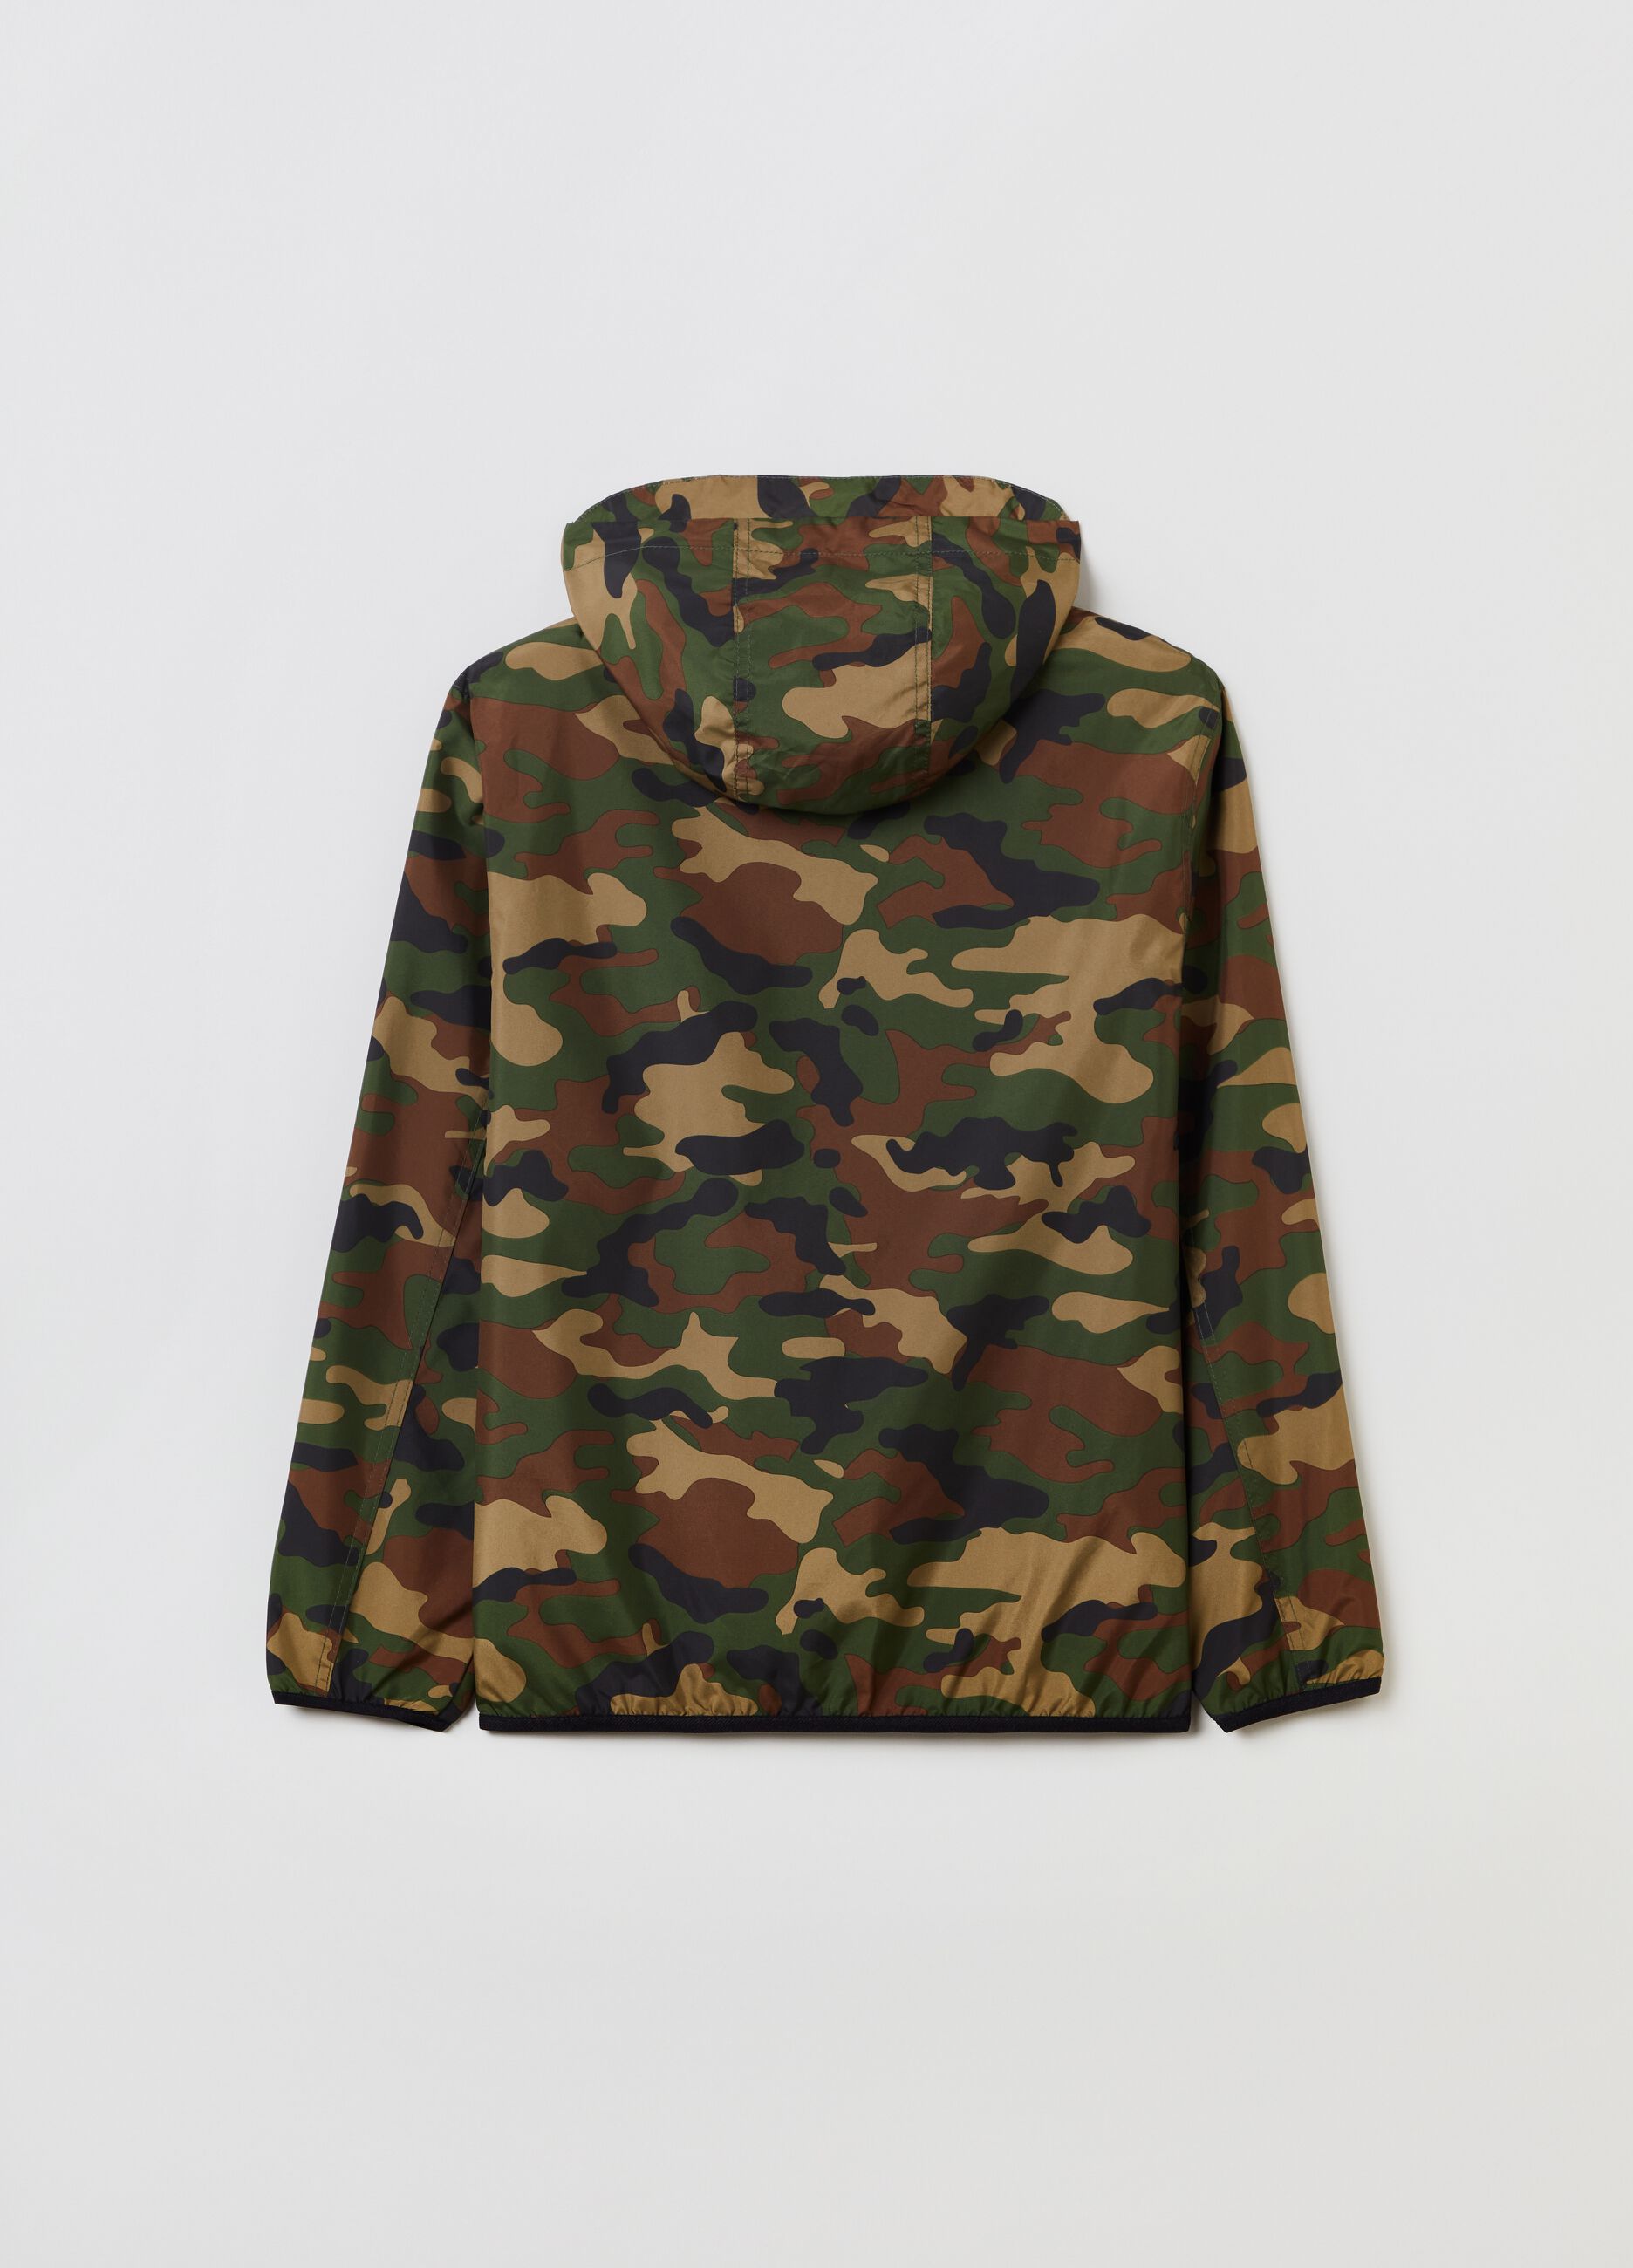 Full-zip camouflage sweatshirt with hood